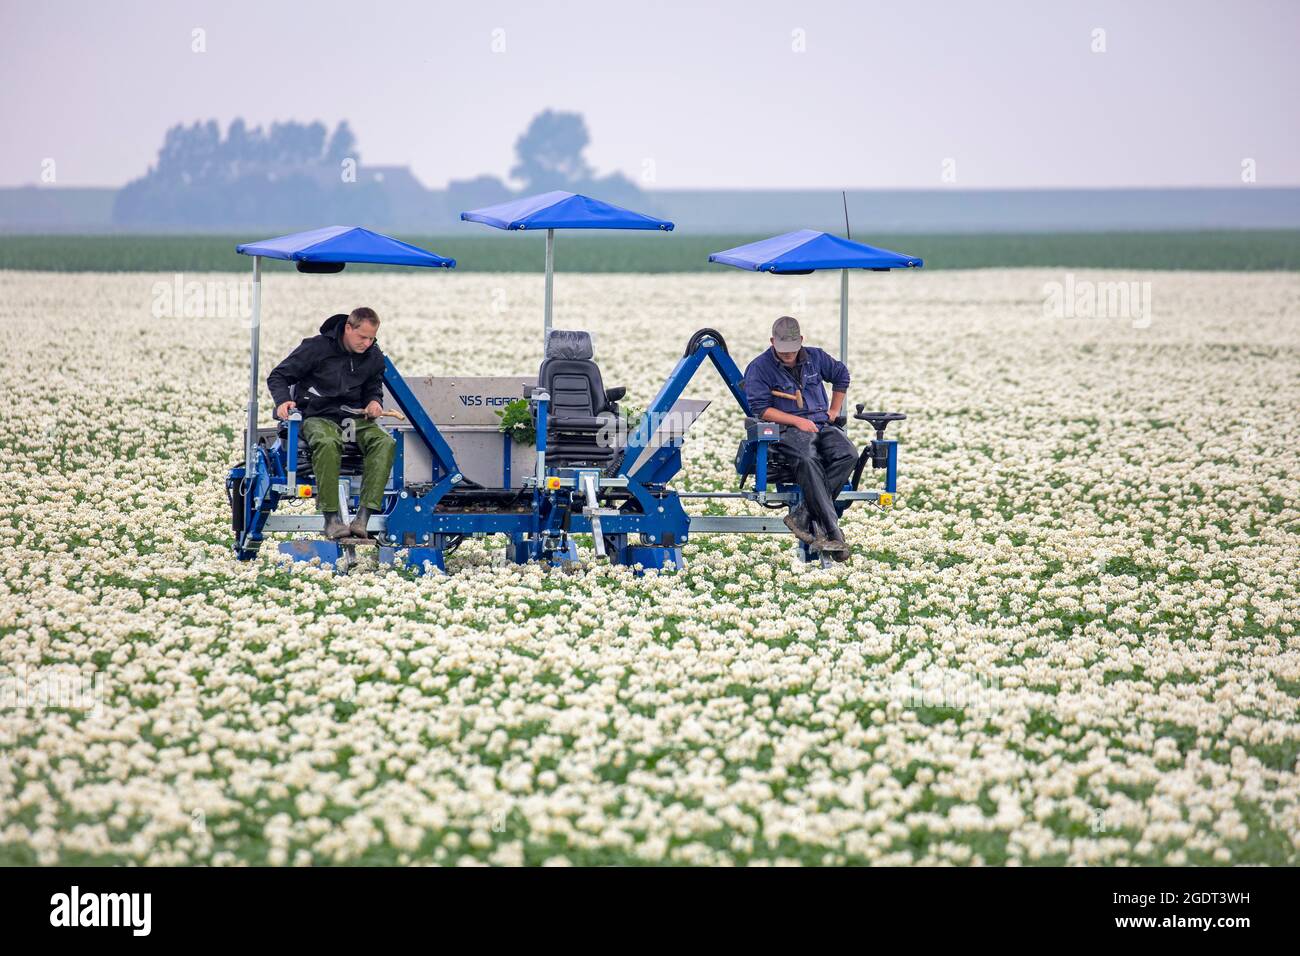 Niederlande, Warffum, blühende Kartoffelfelder. Landwirtschaftliche Arbeiter, die ein Kartoffelfeld kontrollieren, auf der Suche nach kranken Exemplaren. Landwirte kontrollieren das Virus. Stockfoto